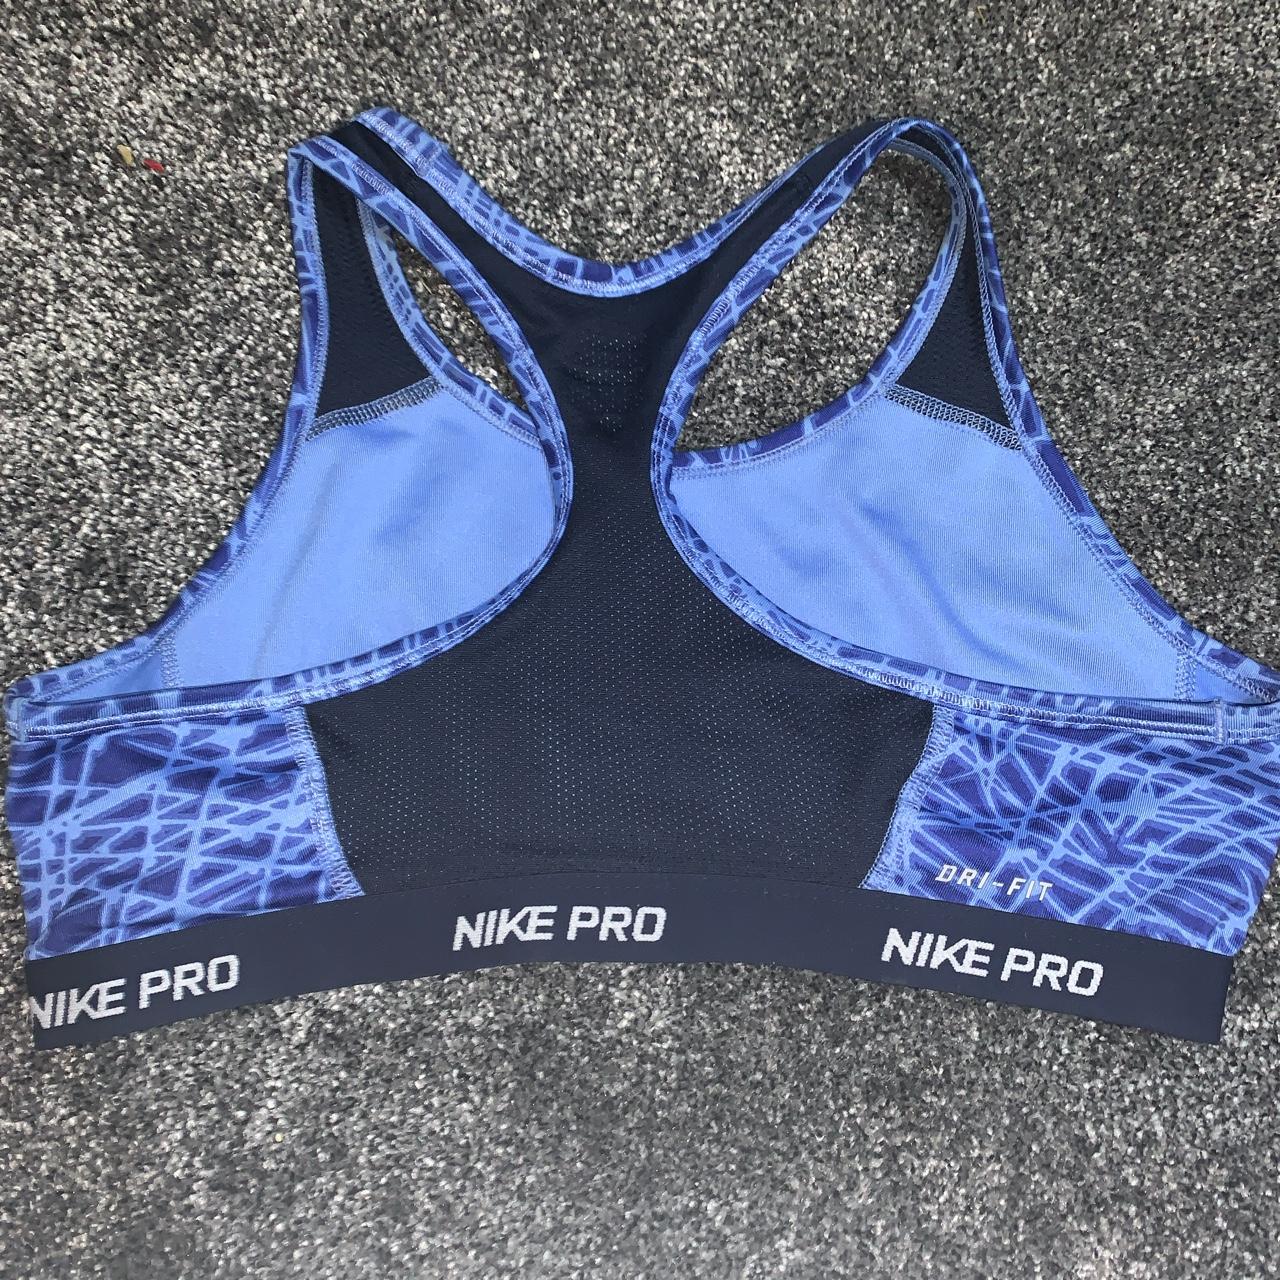 Black Nike Pro sports bra. Quality dri-fit material! - Depop